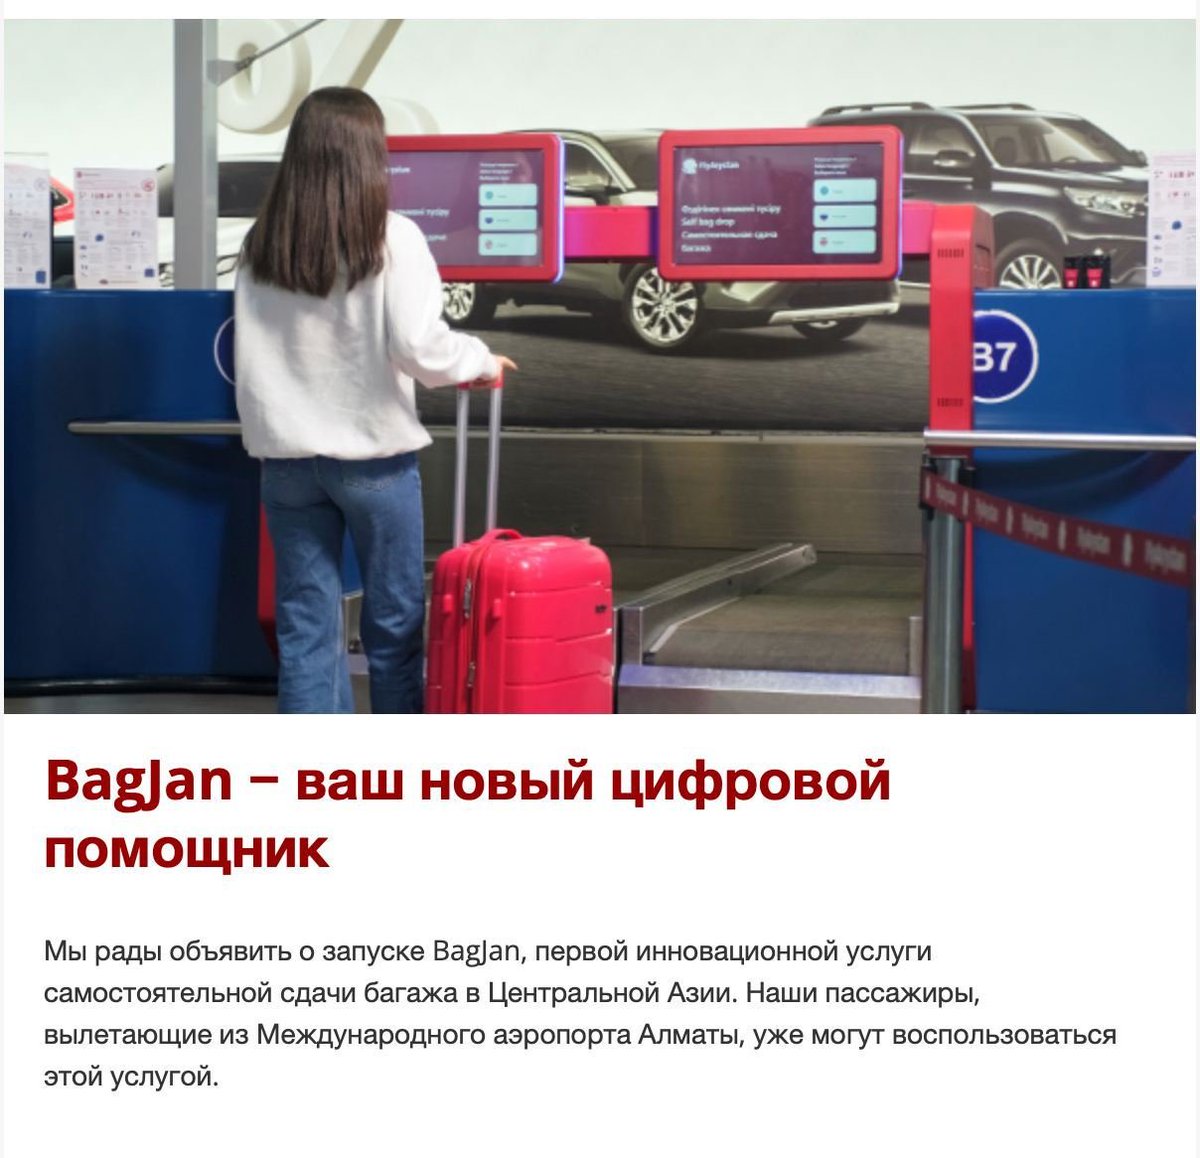 Fly Arystan жынды ма?! Красивое казахское имя ассоциировали под английский bag и тему багажа, когда там смысл совсем другой. Копирайтерлер ойламайд кышкене. (Нейминги типа iDos еще понятны, потому что смысл плюс минус один)